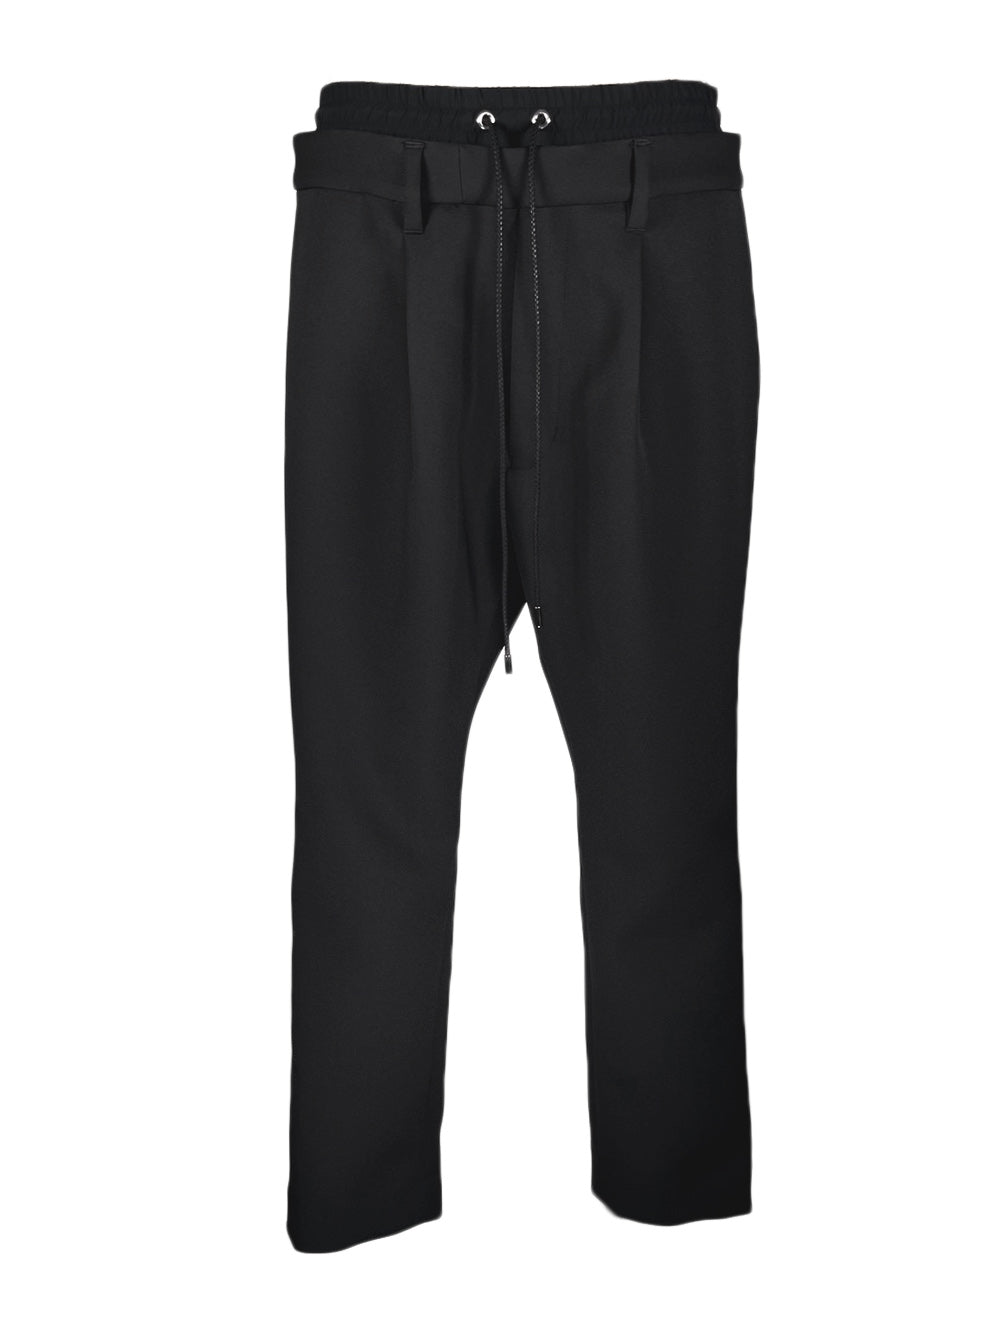 LB23AW-PT01-TC | Double waist jodhpur trousers | BLACK 